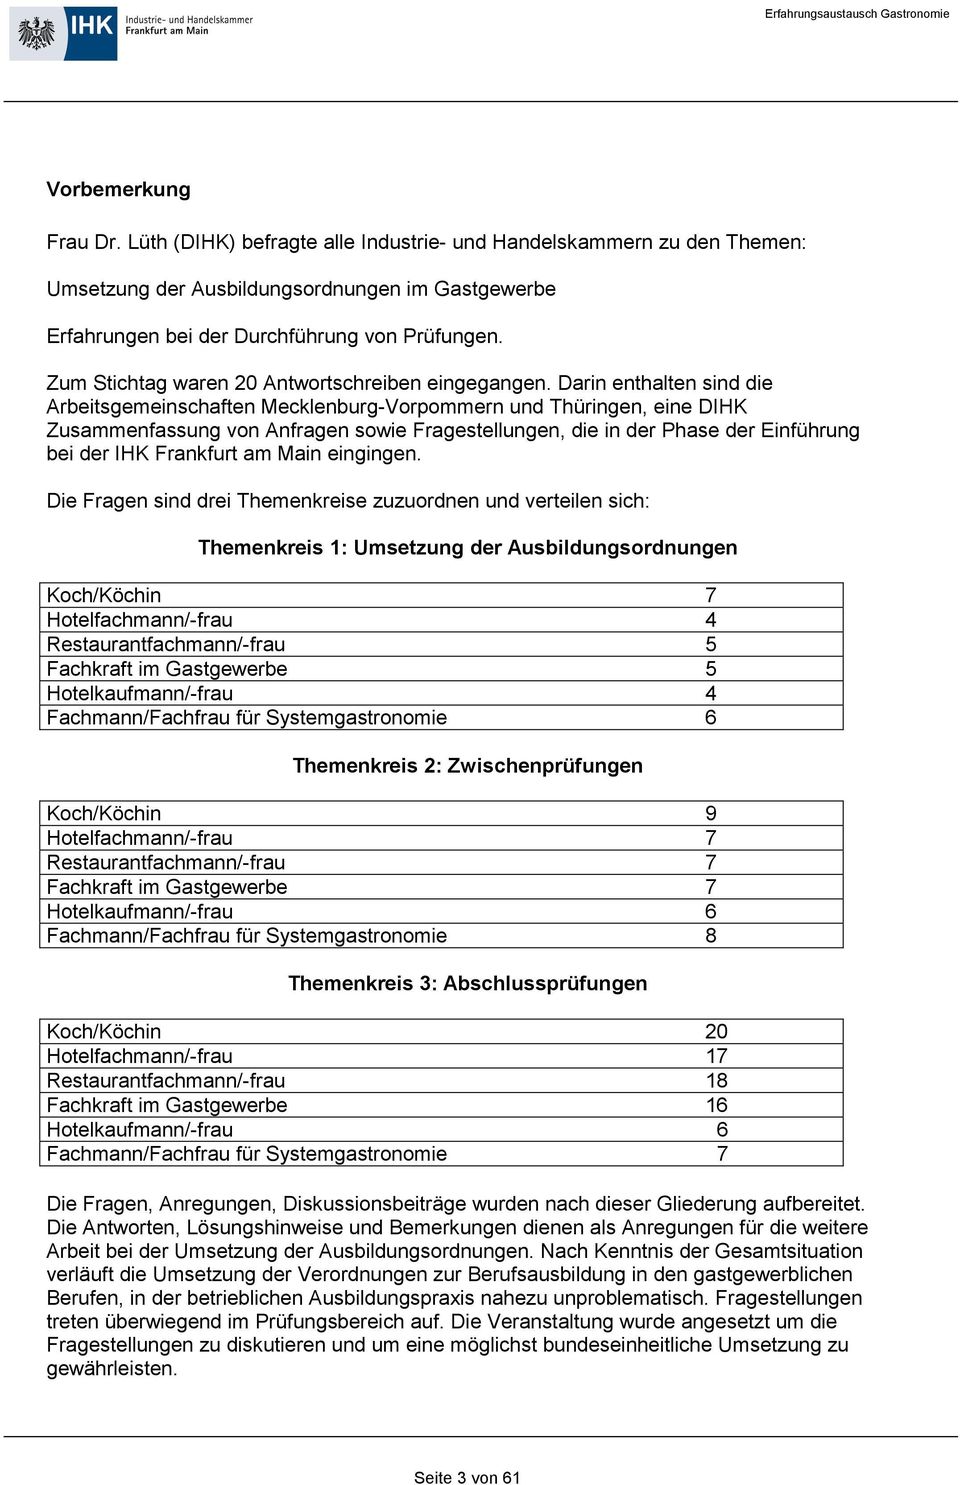 Darin enthalten sind die Arbeitsgemeinschaften Mecklenburg-Vorpommern und Thüringen, eine DIHK Zusammenfassung von Anfragen sowie Fragestellungen, die in der Phase der Einführung bei der IHK